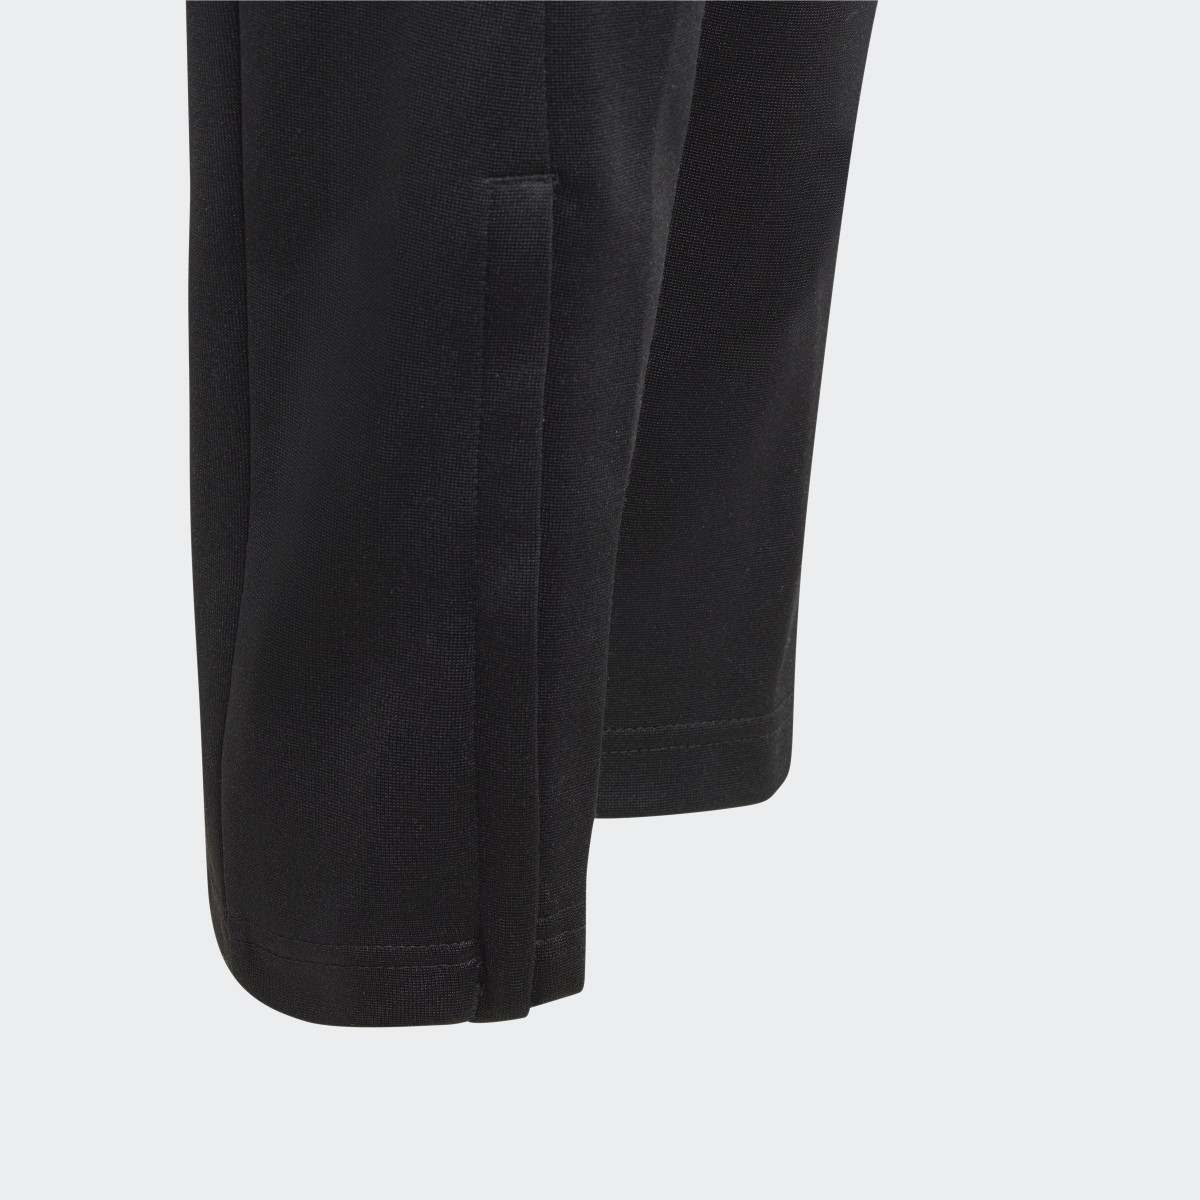 Adidas Tiro Suit-Up Woven Pants. 5